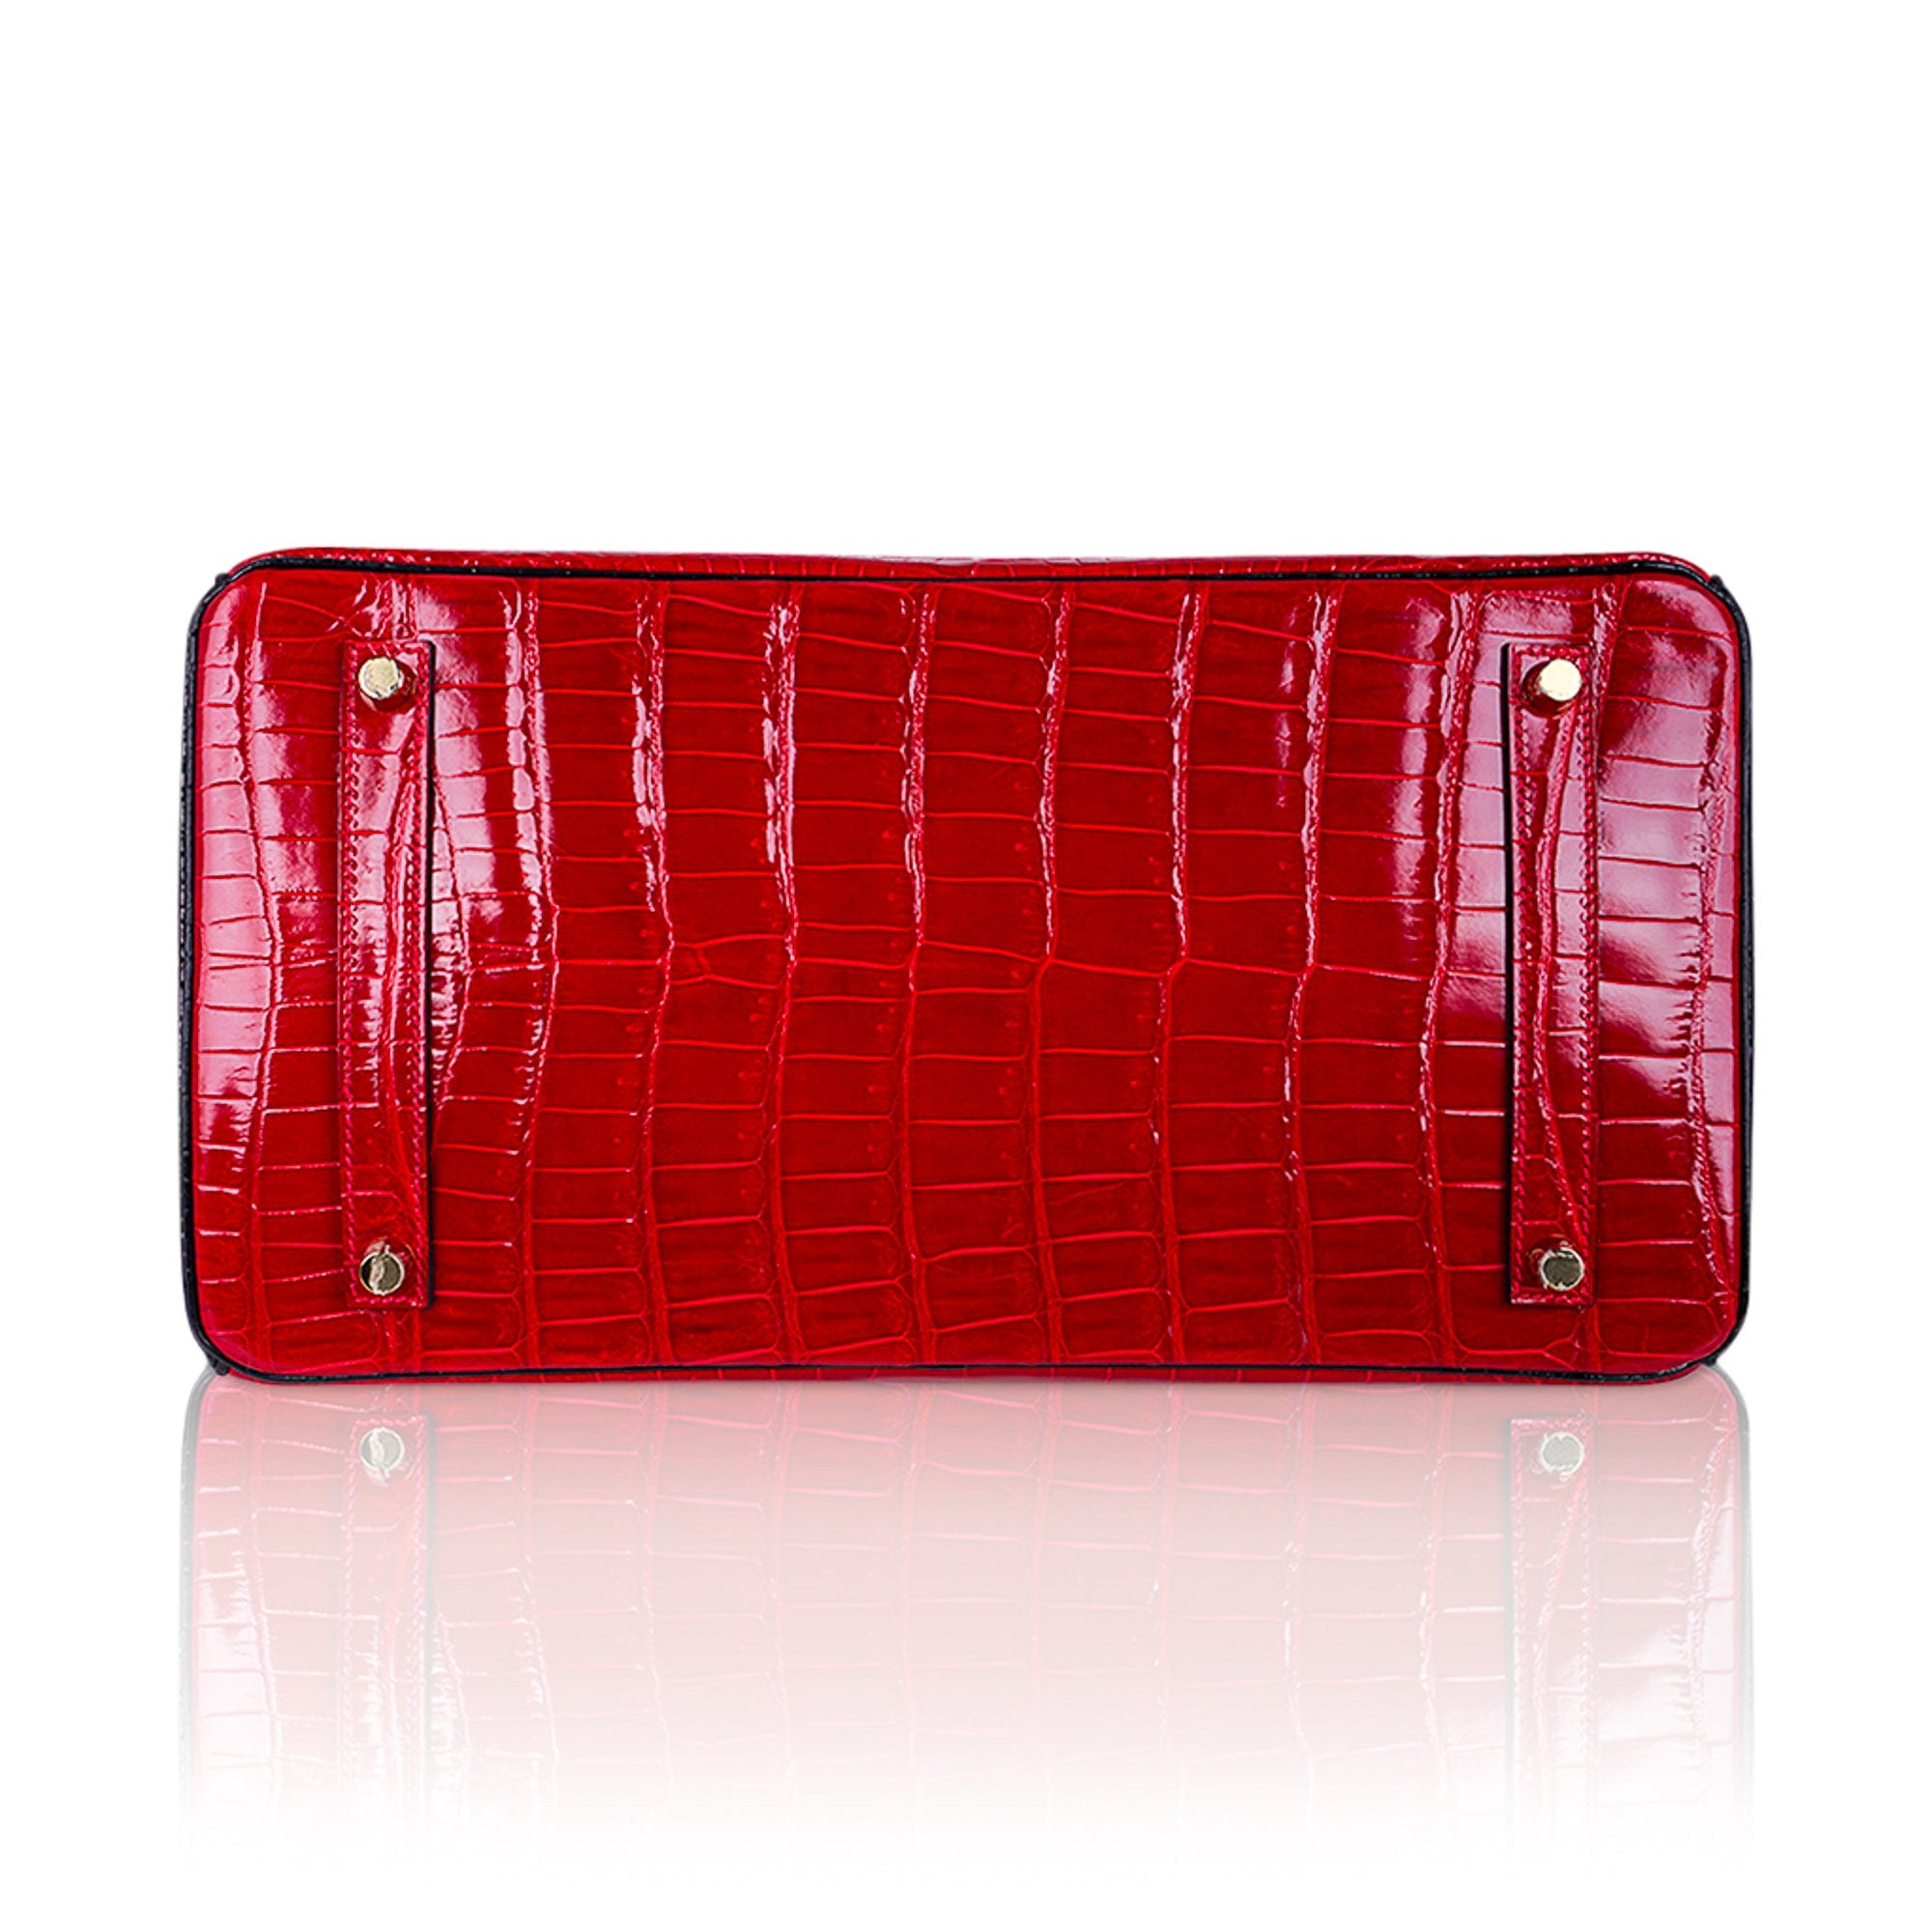 UhfmrShops, Hermès Birkin Handbag 400311